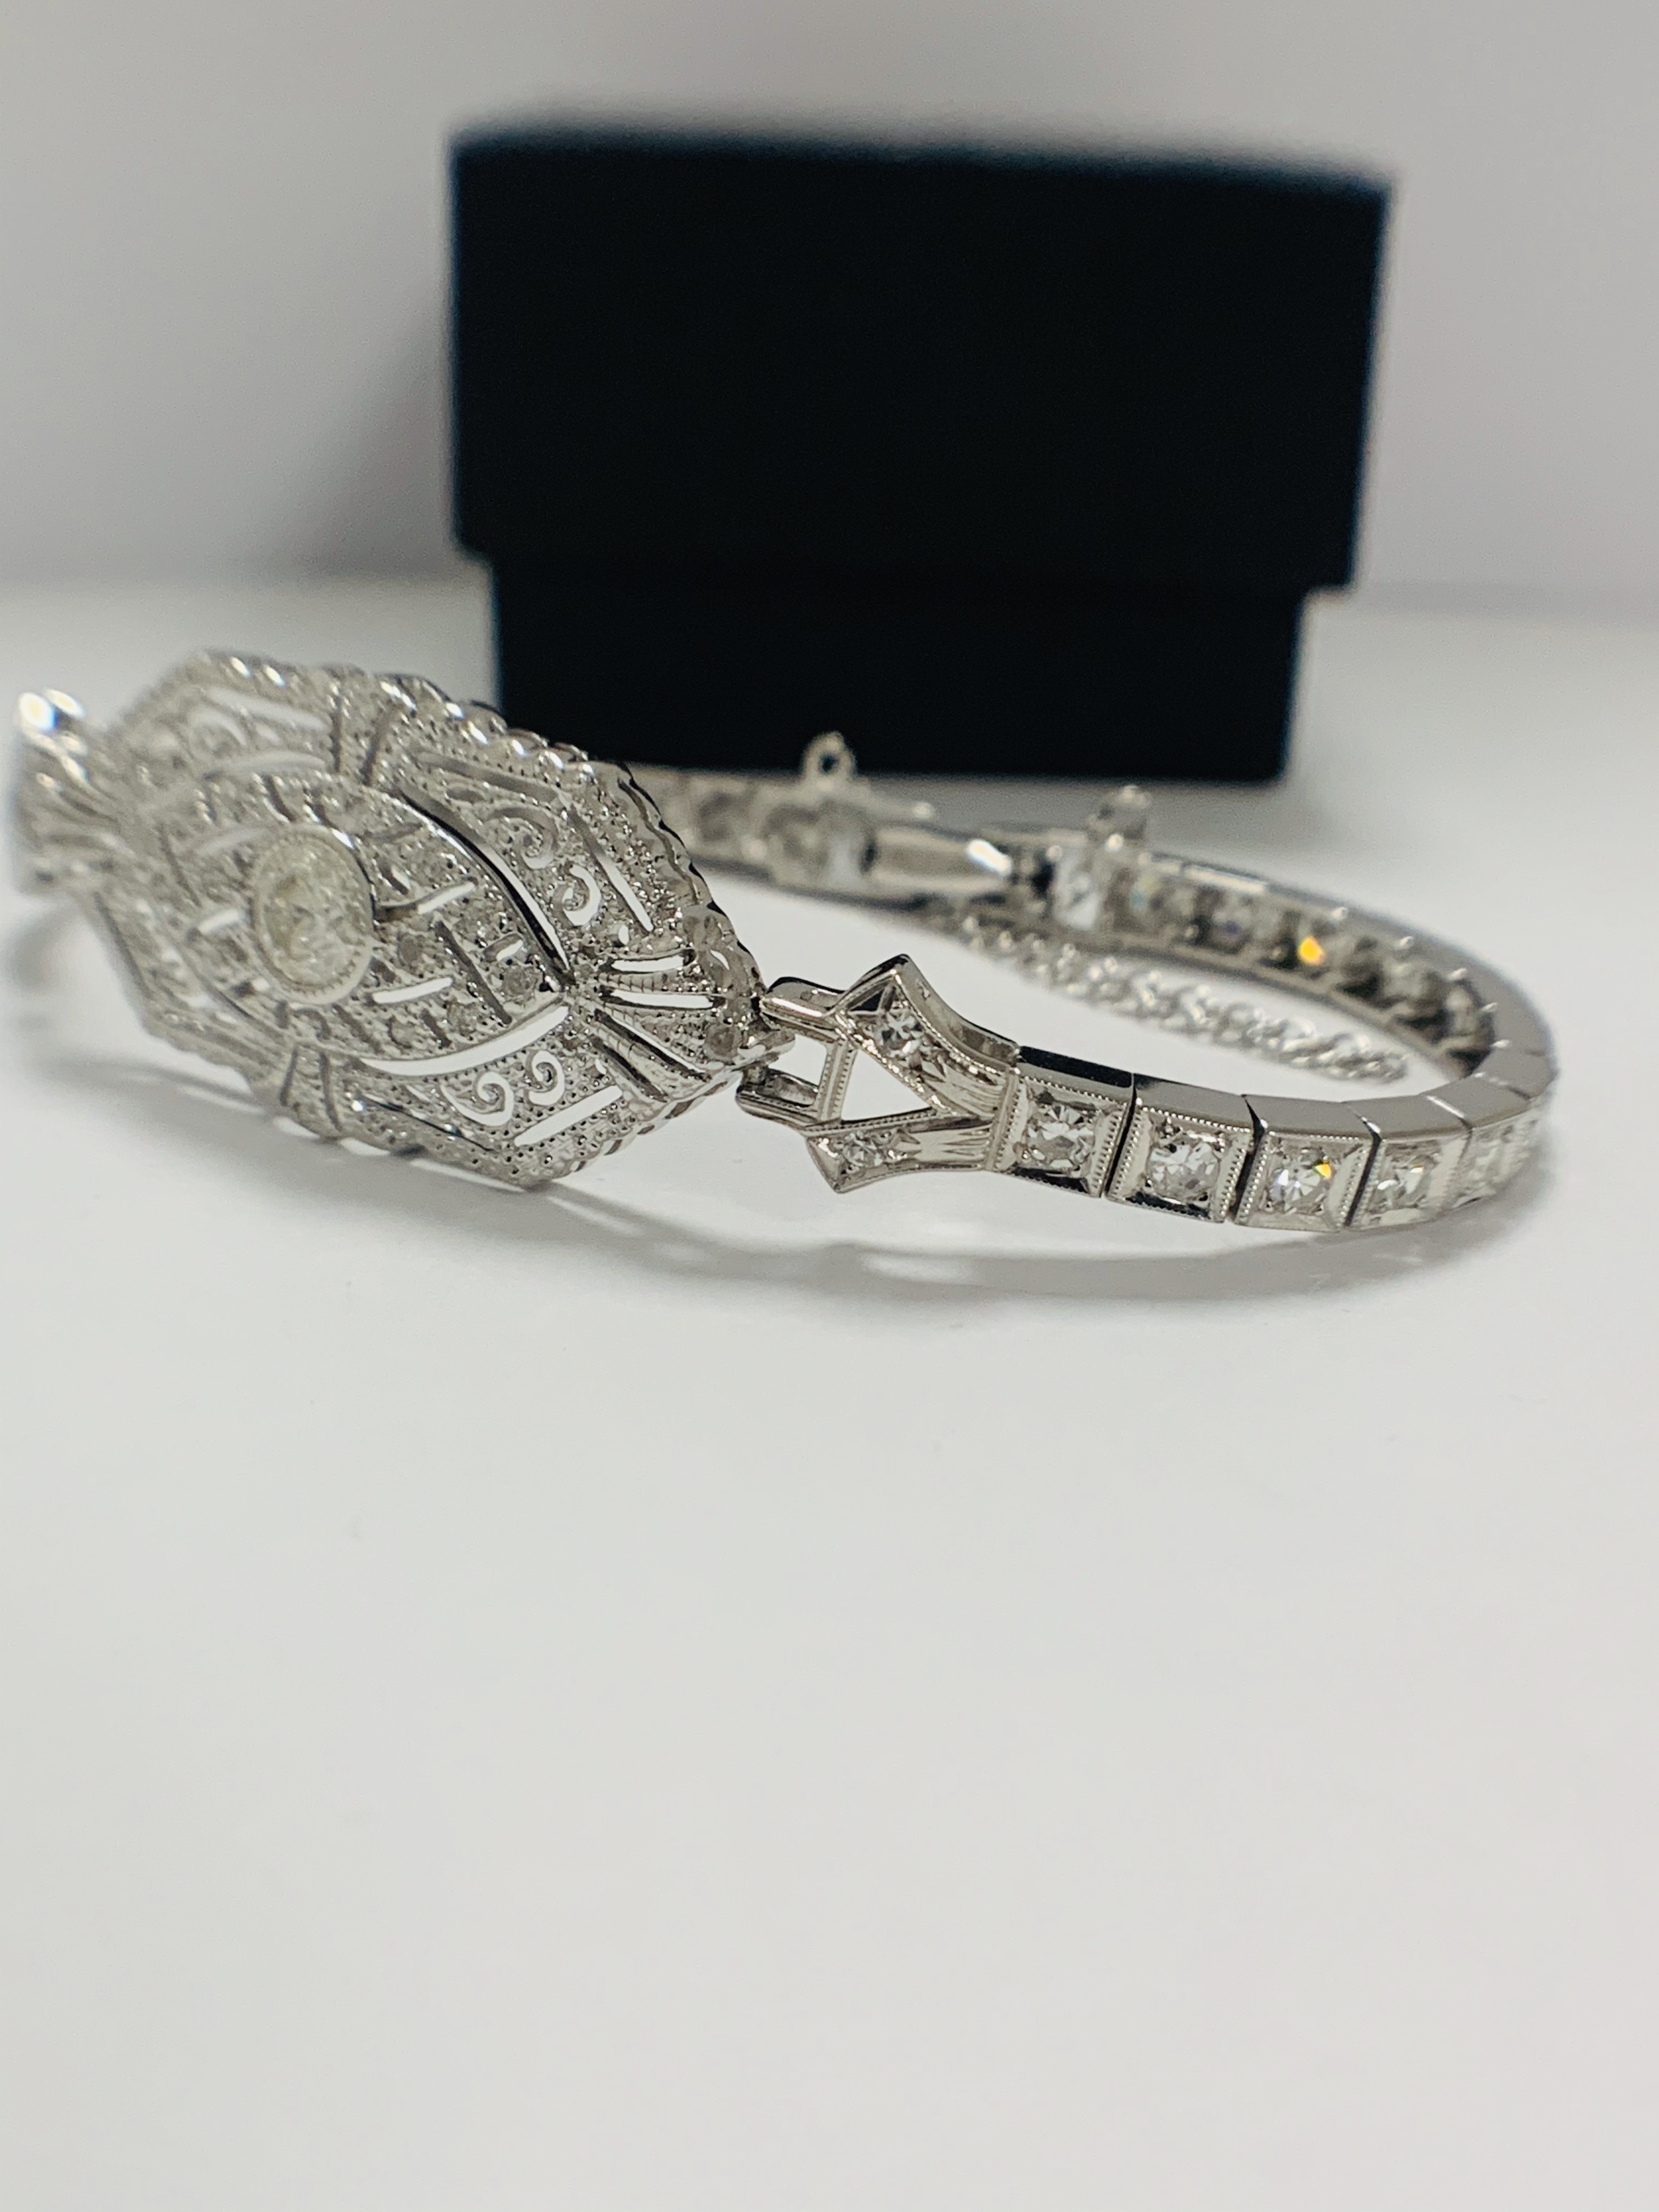 Platinum Diamond bracelet featuring, one round brilliant cut Diamond (0.43ct), with 49 round brillia - Image 3 of 16